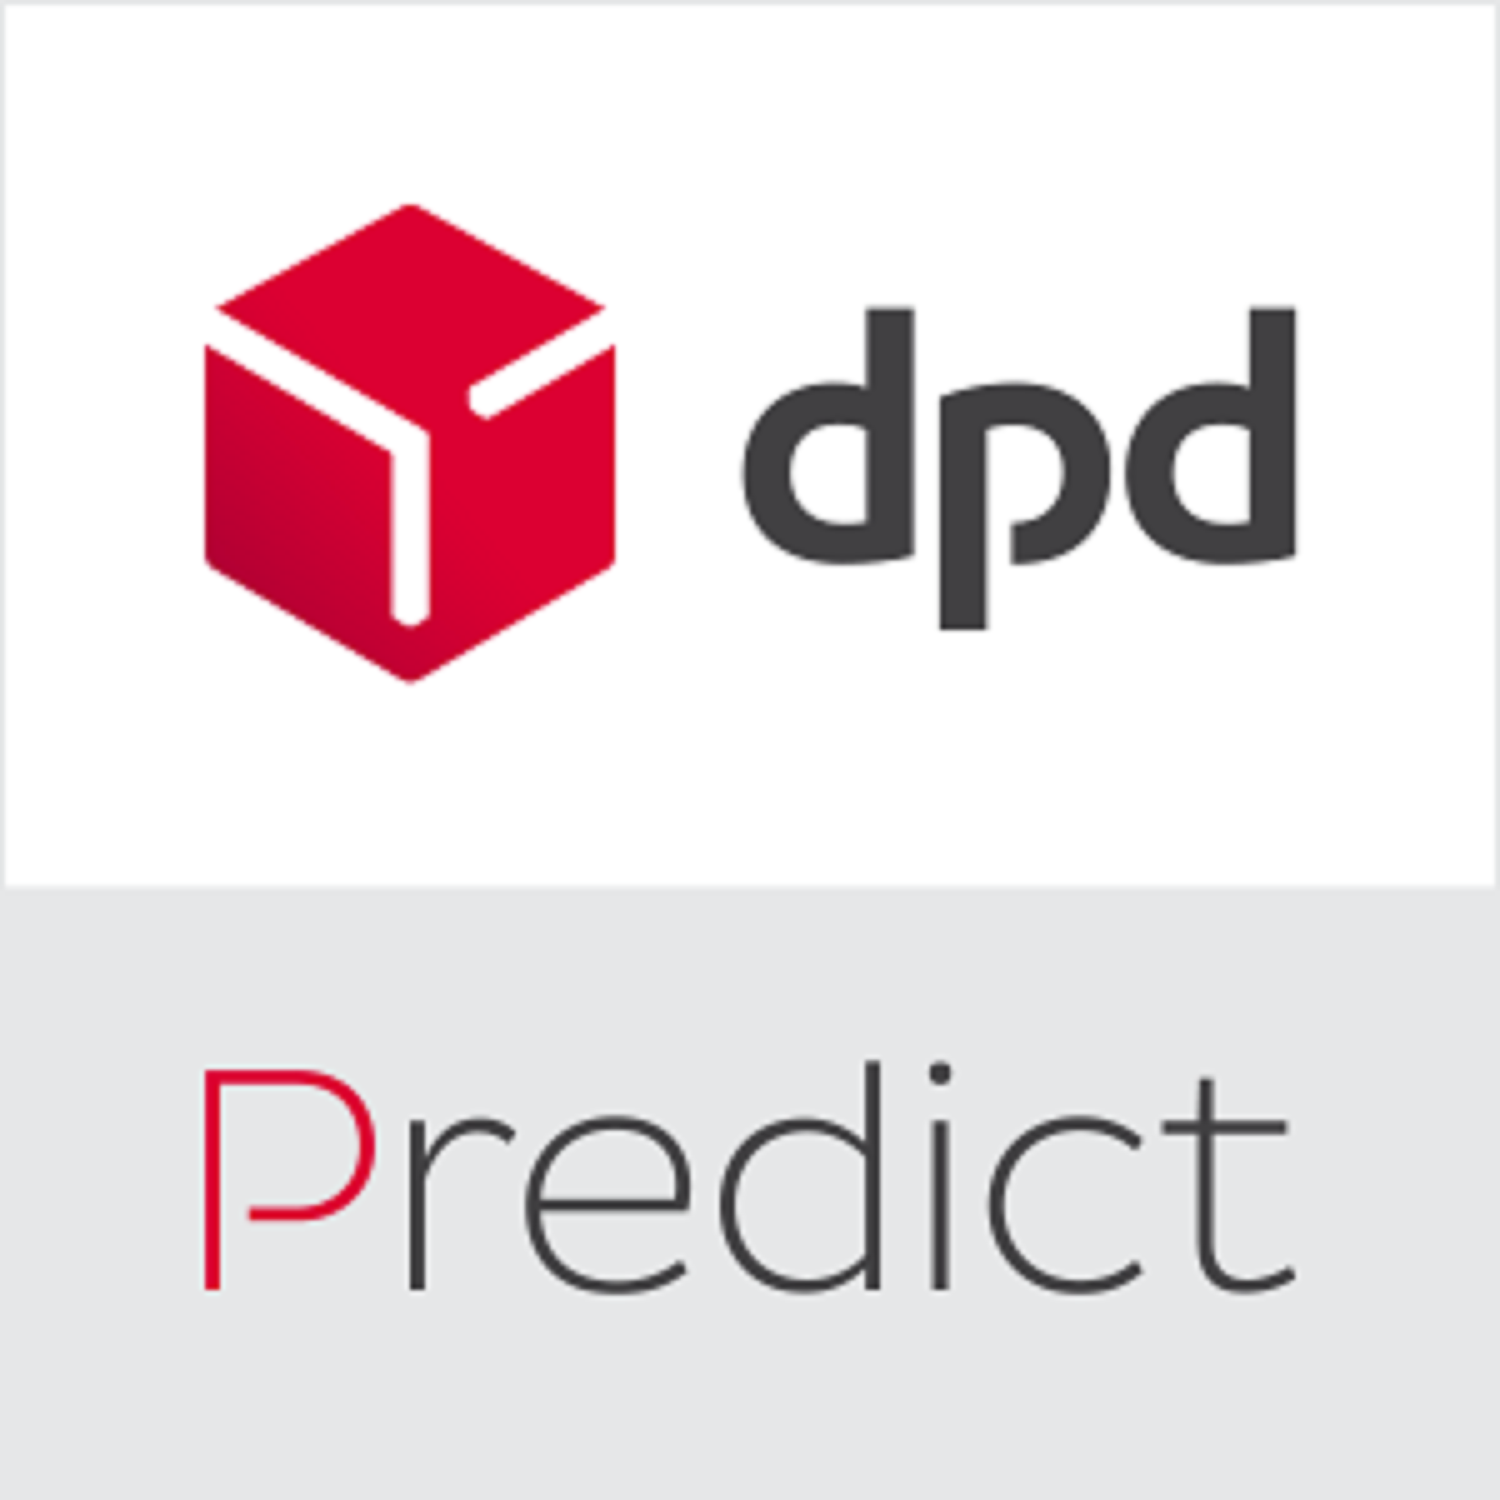 DPD - PREDICT